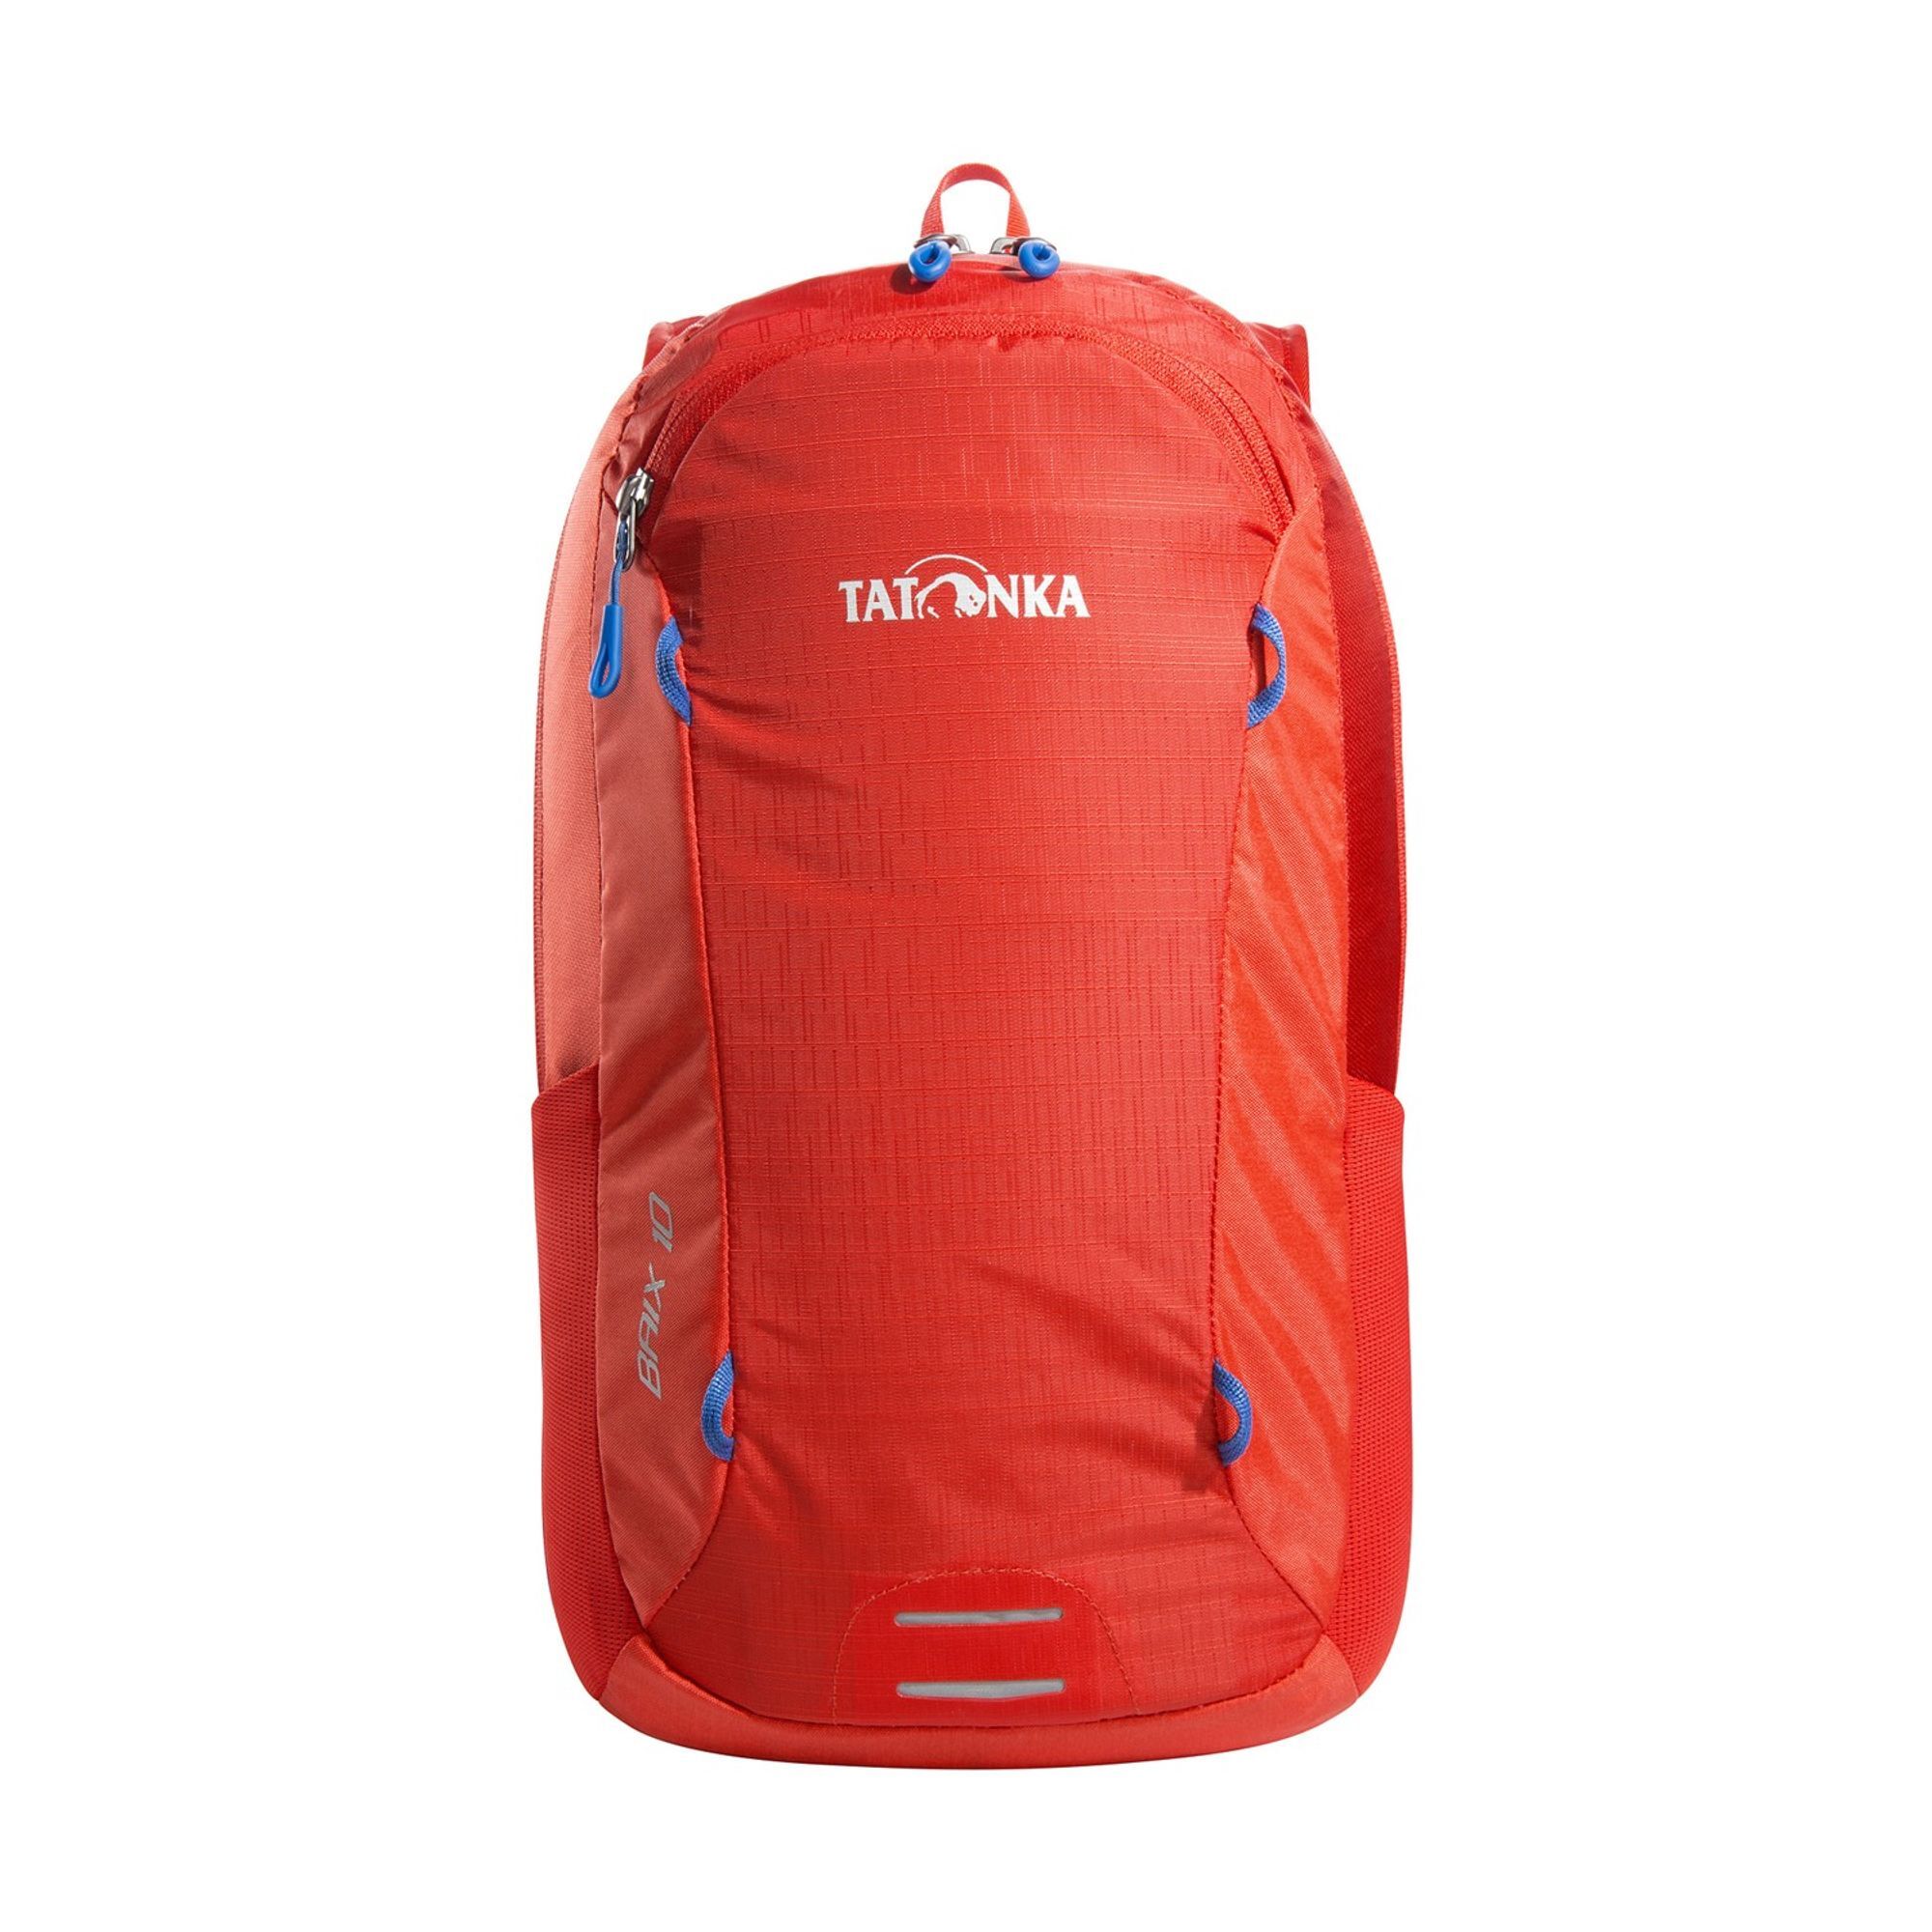 Рюкзак Tatonka Baix 10 42 cm, цвет red orange